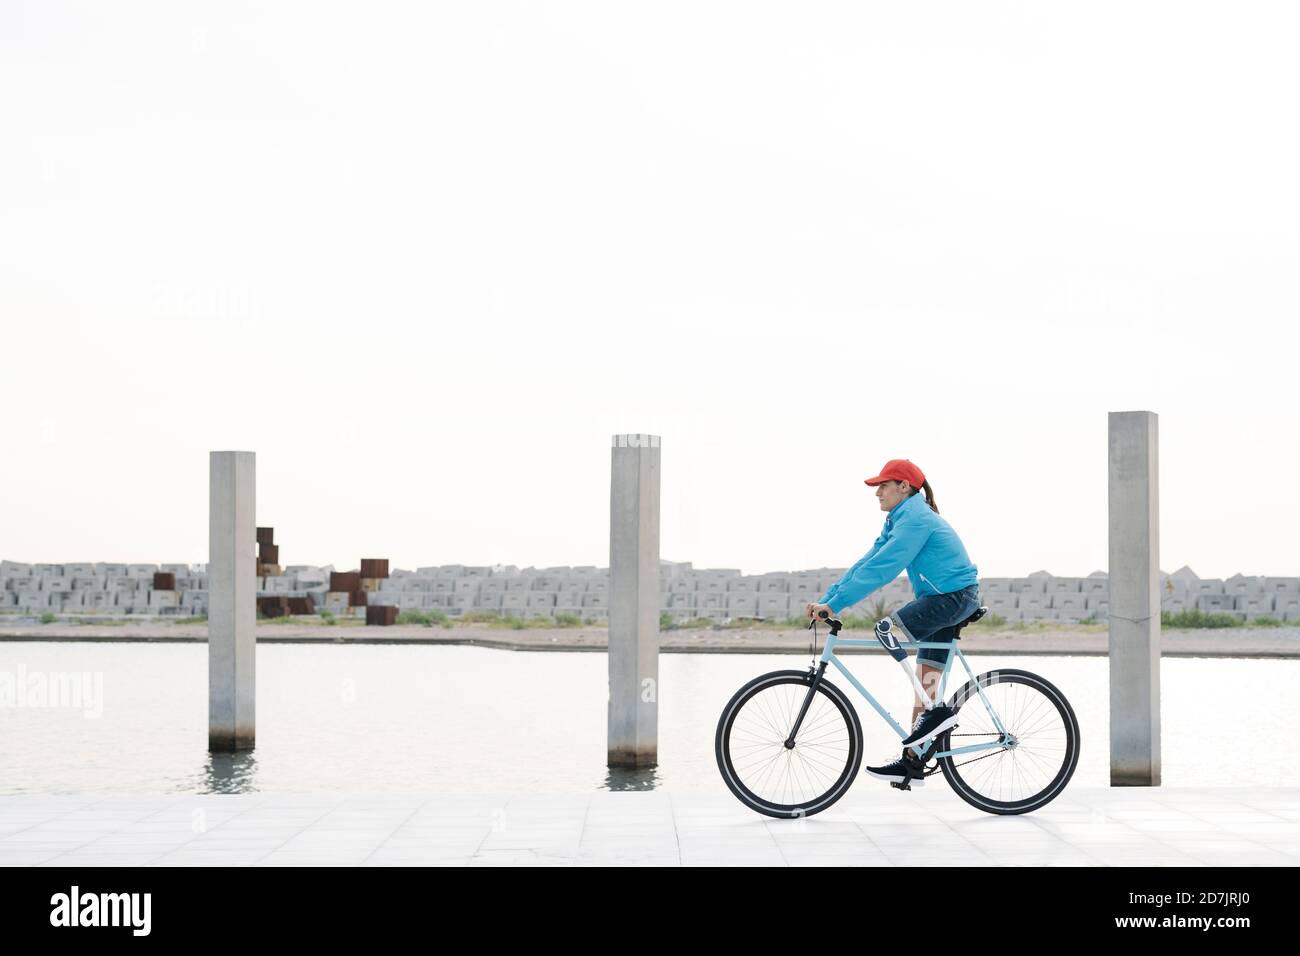 Jeune homme à vélo sur une piste contre un ciel dégagé Banque D'Images